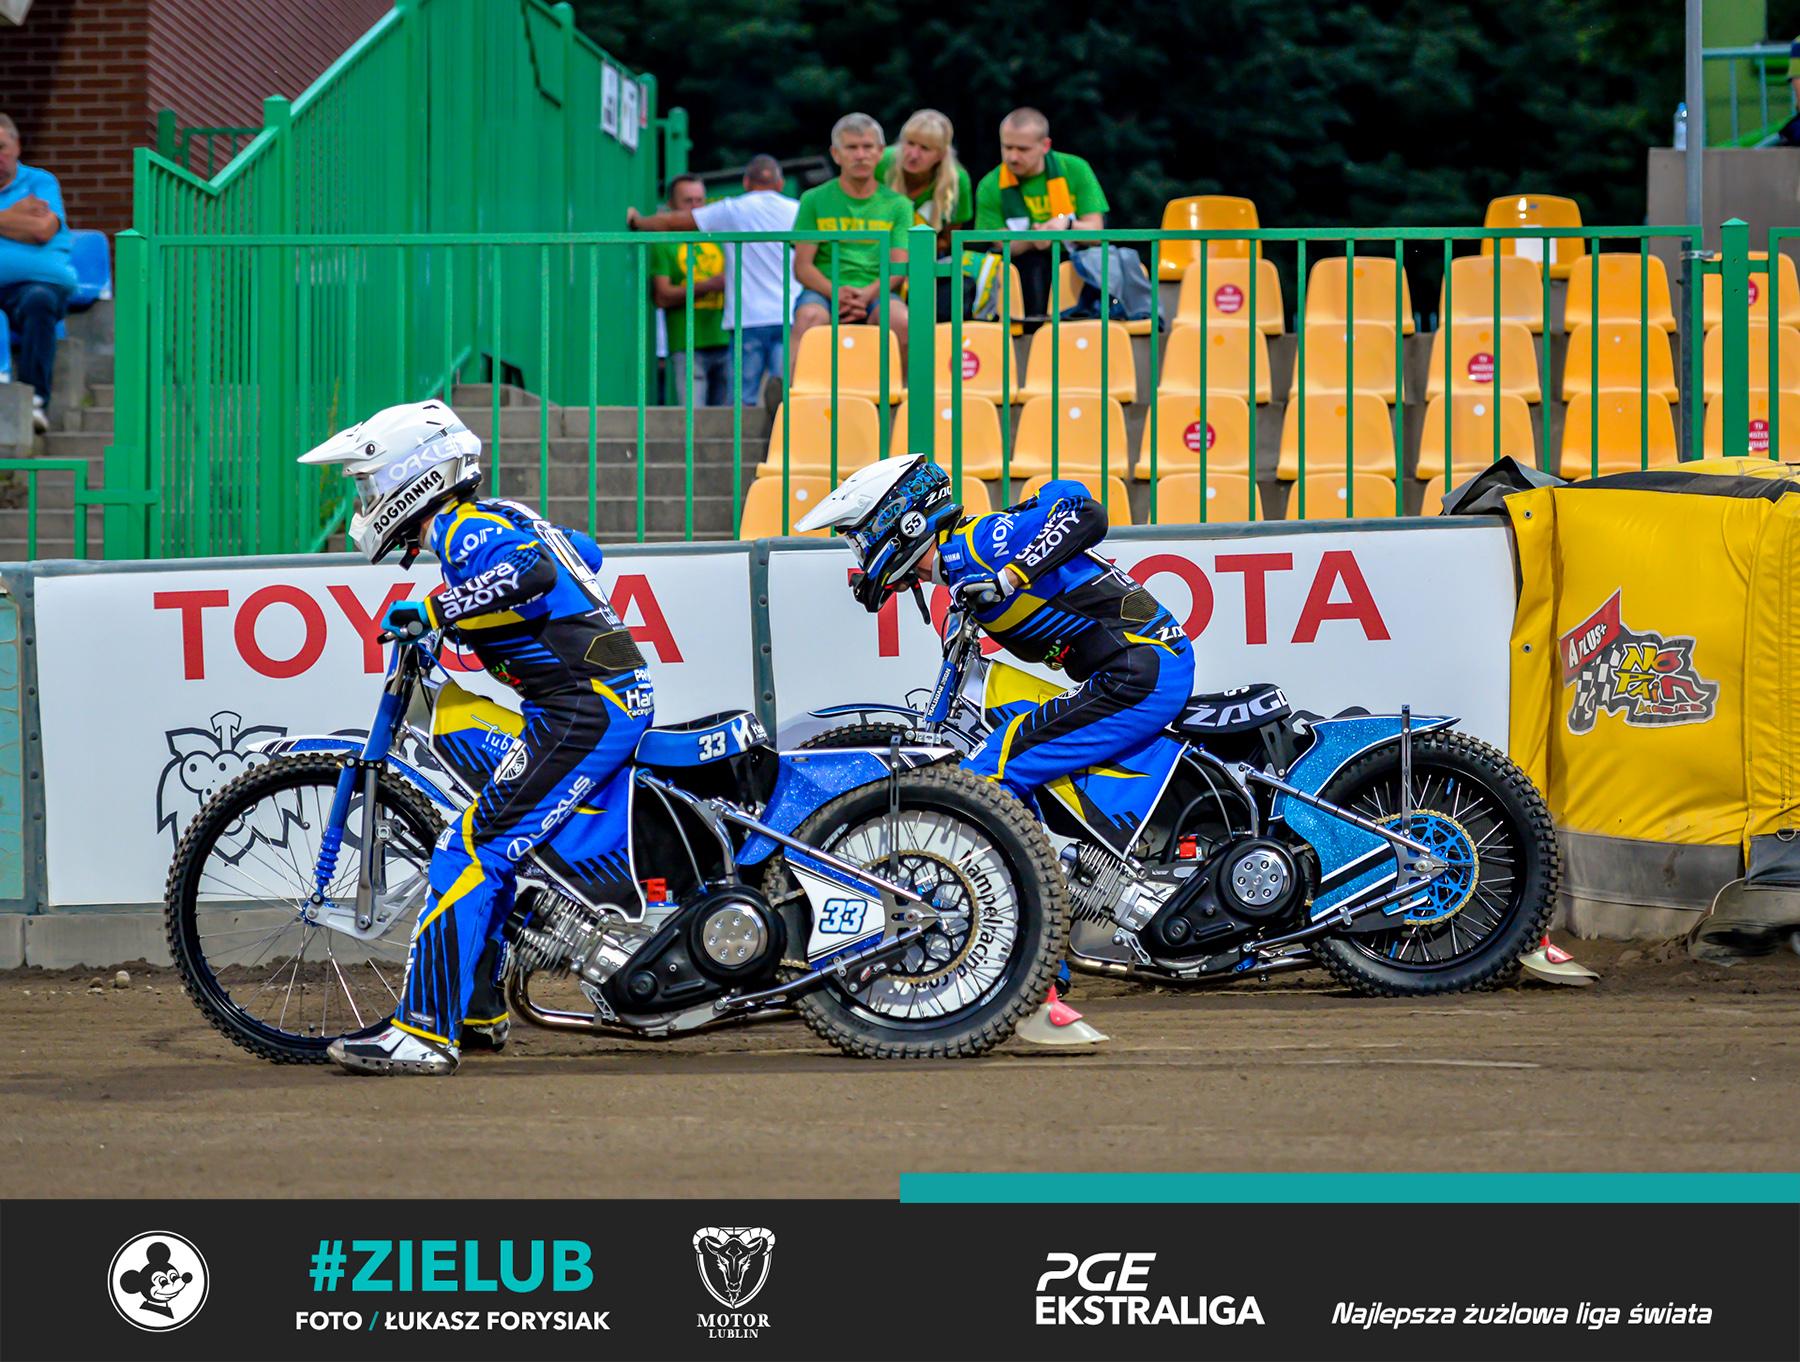 ,,Nie było łatwo. Rywal jest bardzo mocny u siebie” – wypowiedzi Motoru Lublin po meczu #ZIELUB